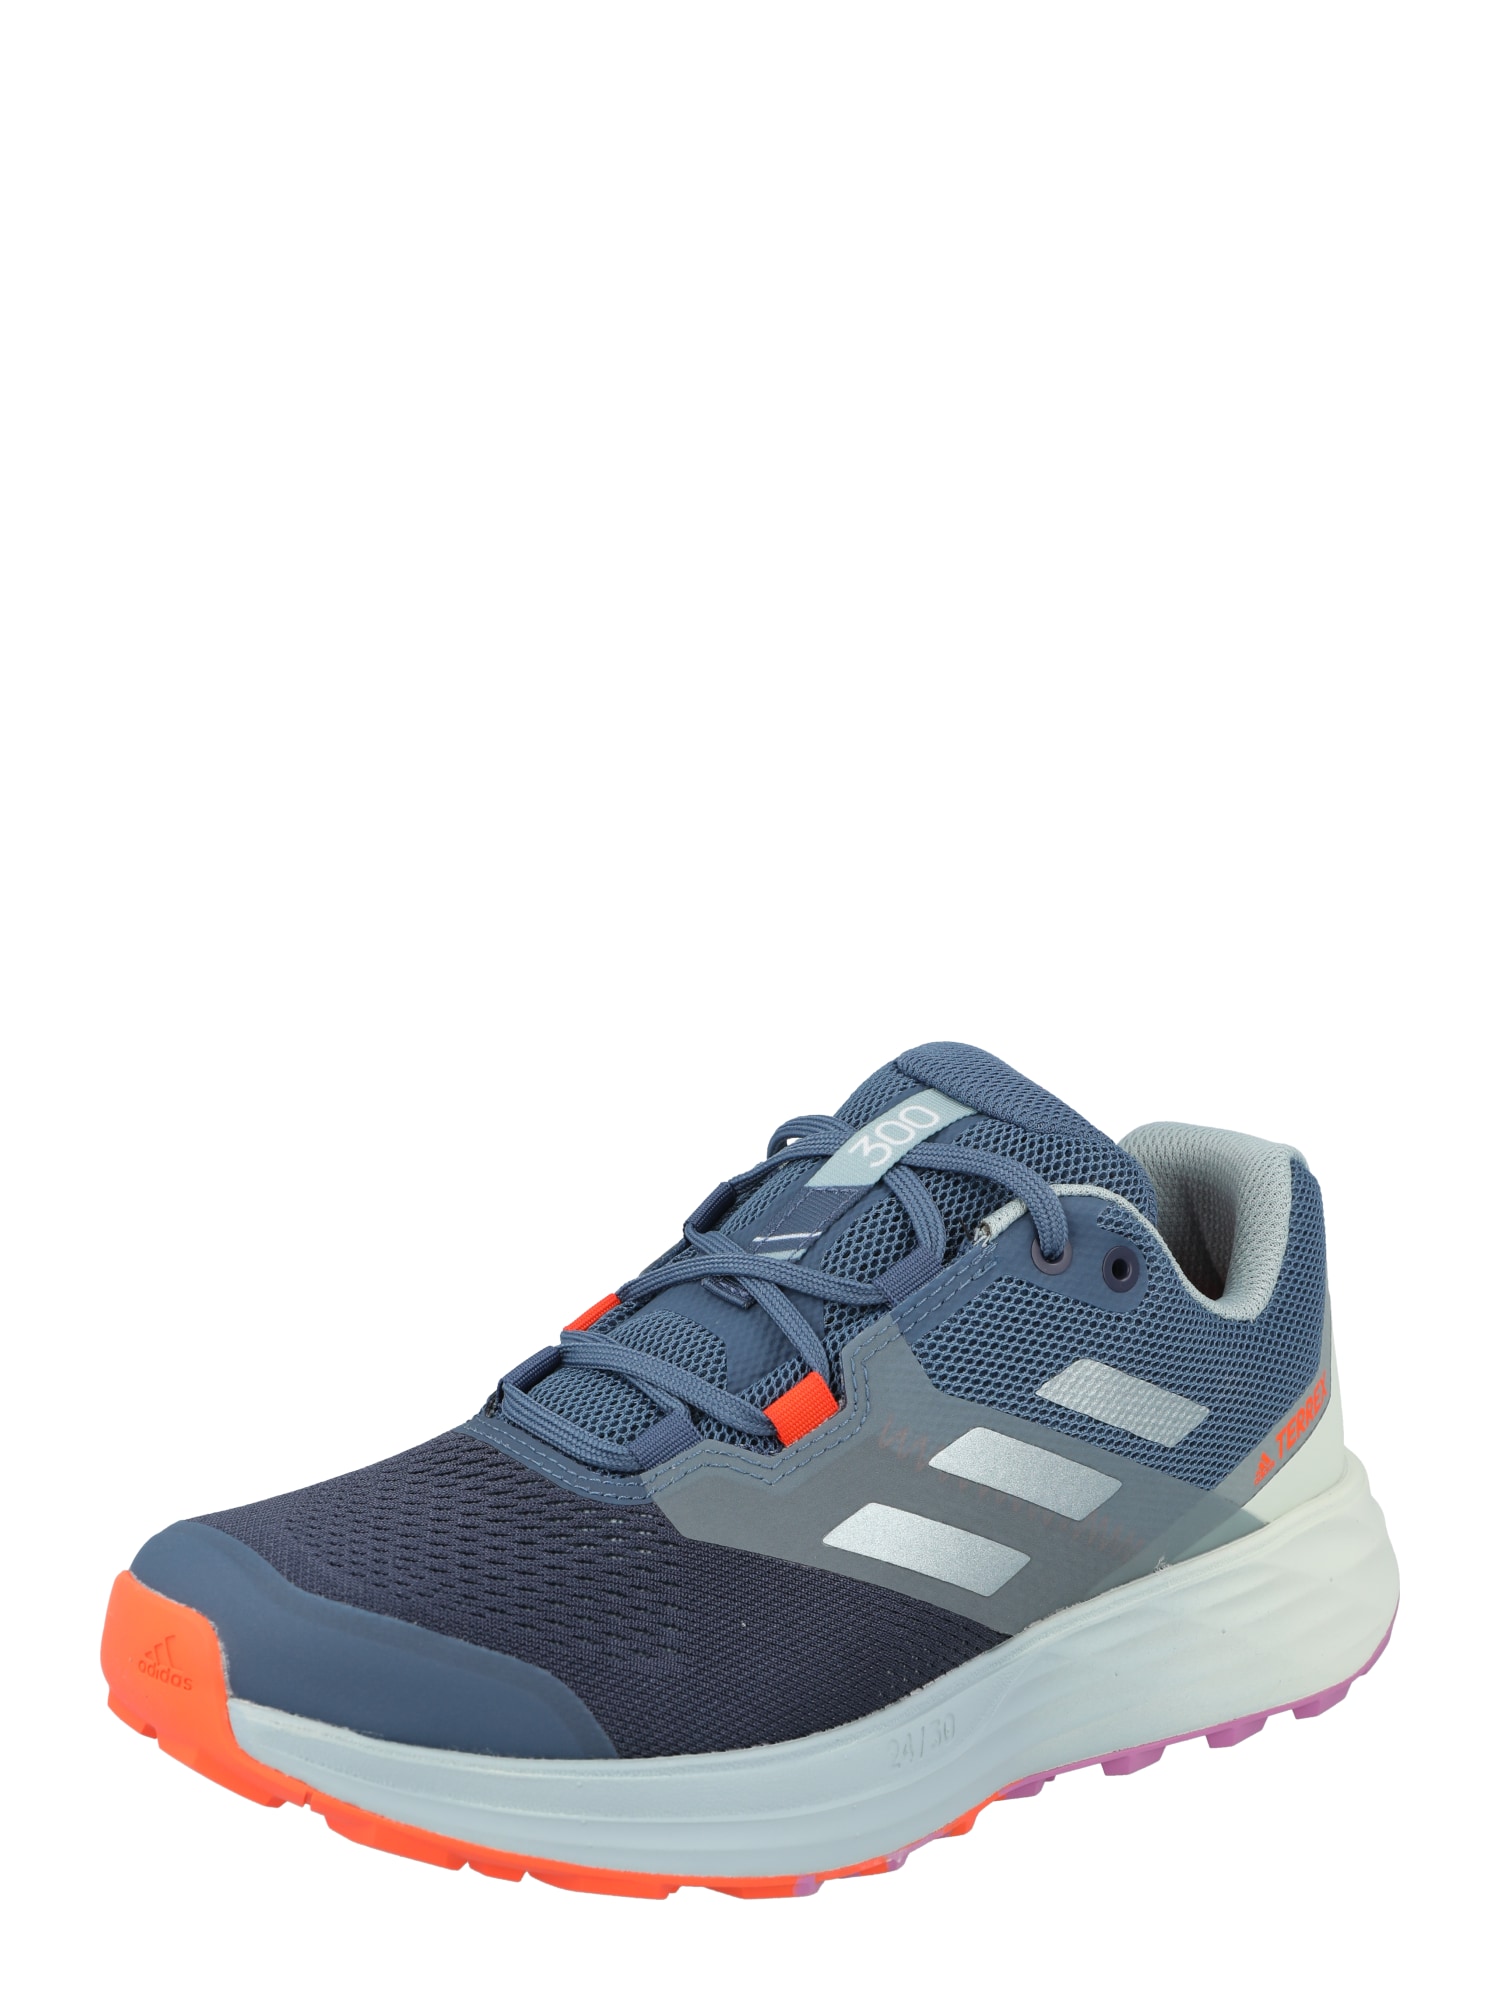 adidas Terrex Bėgimo batai 'Two Flow' pilka / mėlyna / oranžinė / tamsiai mėlyna jūros spalva